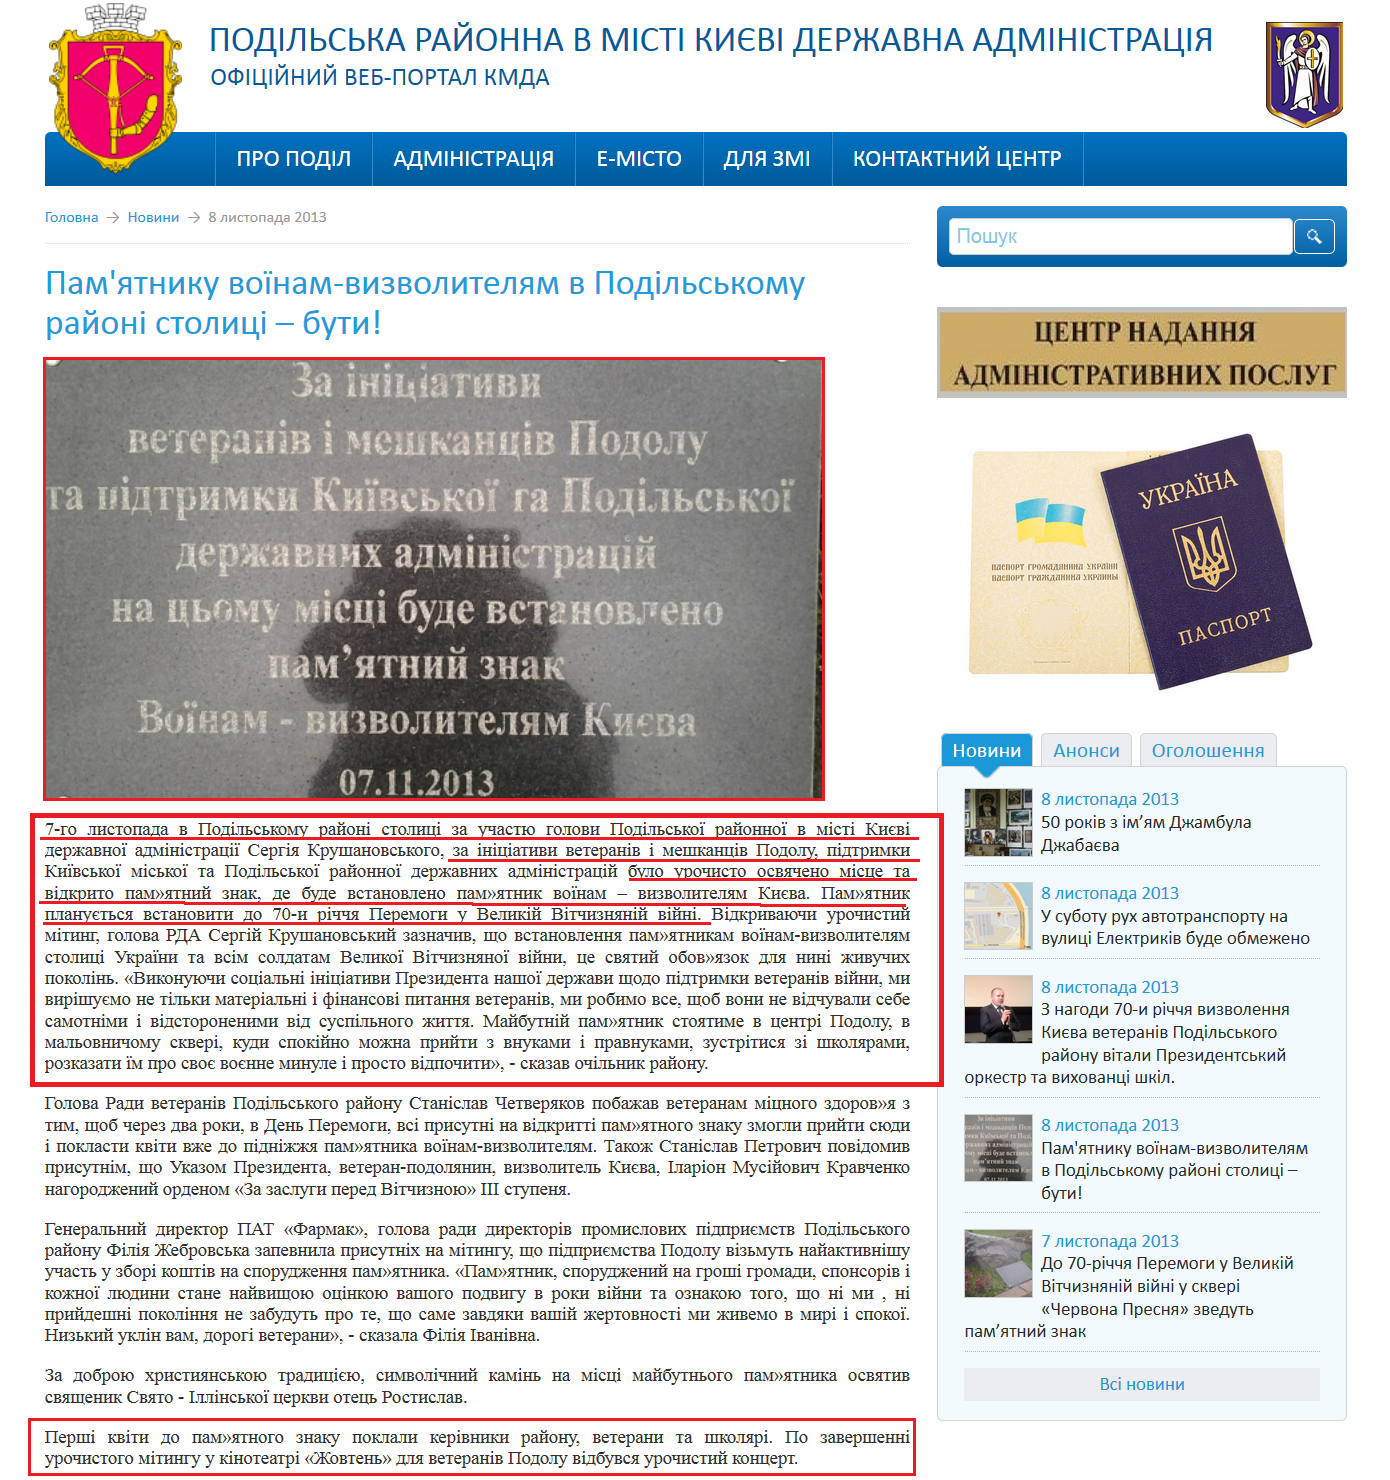 http://podil.kievcity.gov.ua/news/552.html